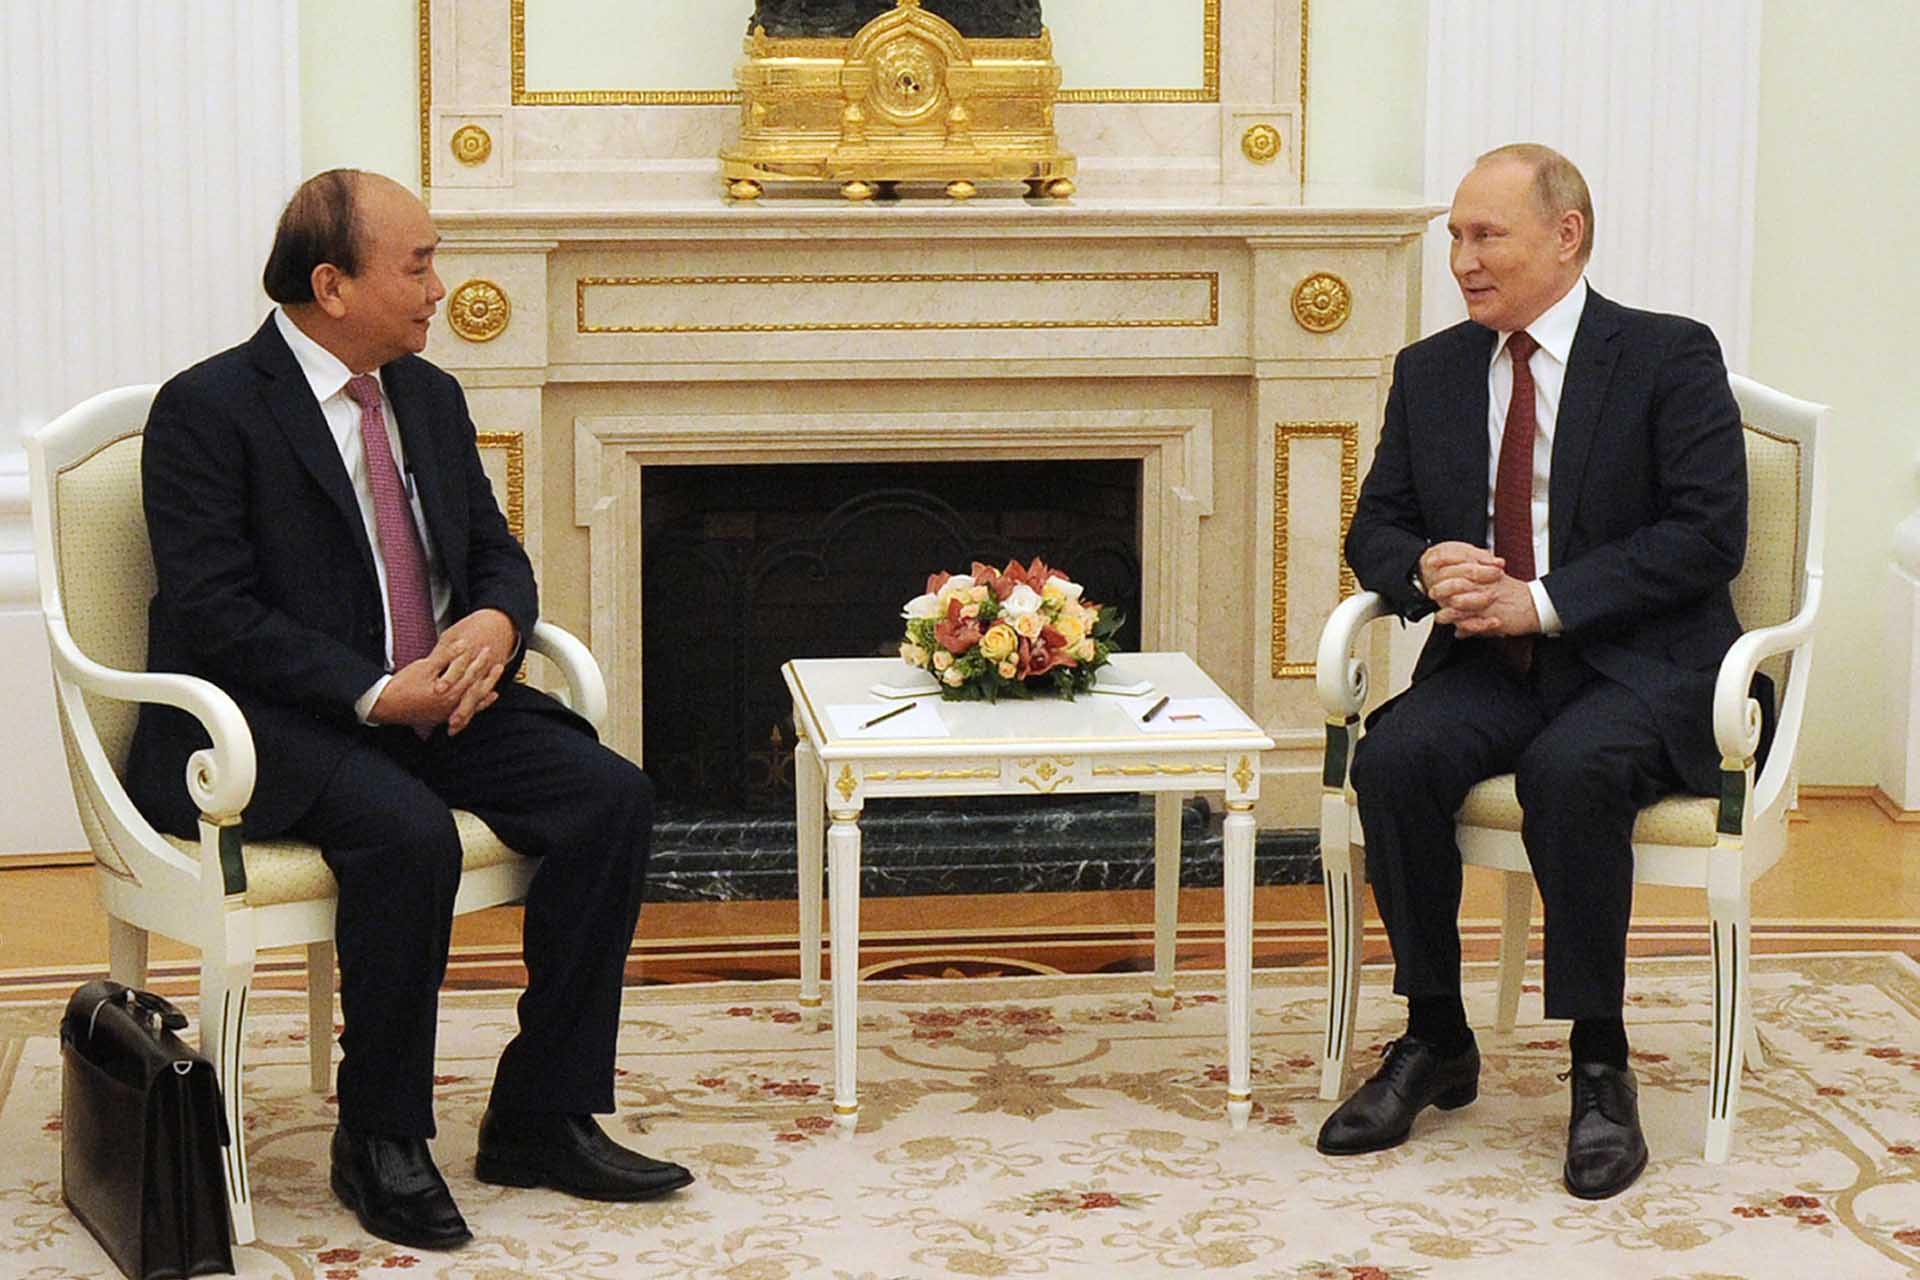 Tương lai chung hòa bình, thịnh vượng cho cả hai đất nước Việt Nam-Nga